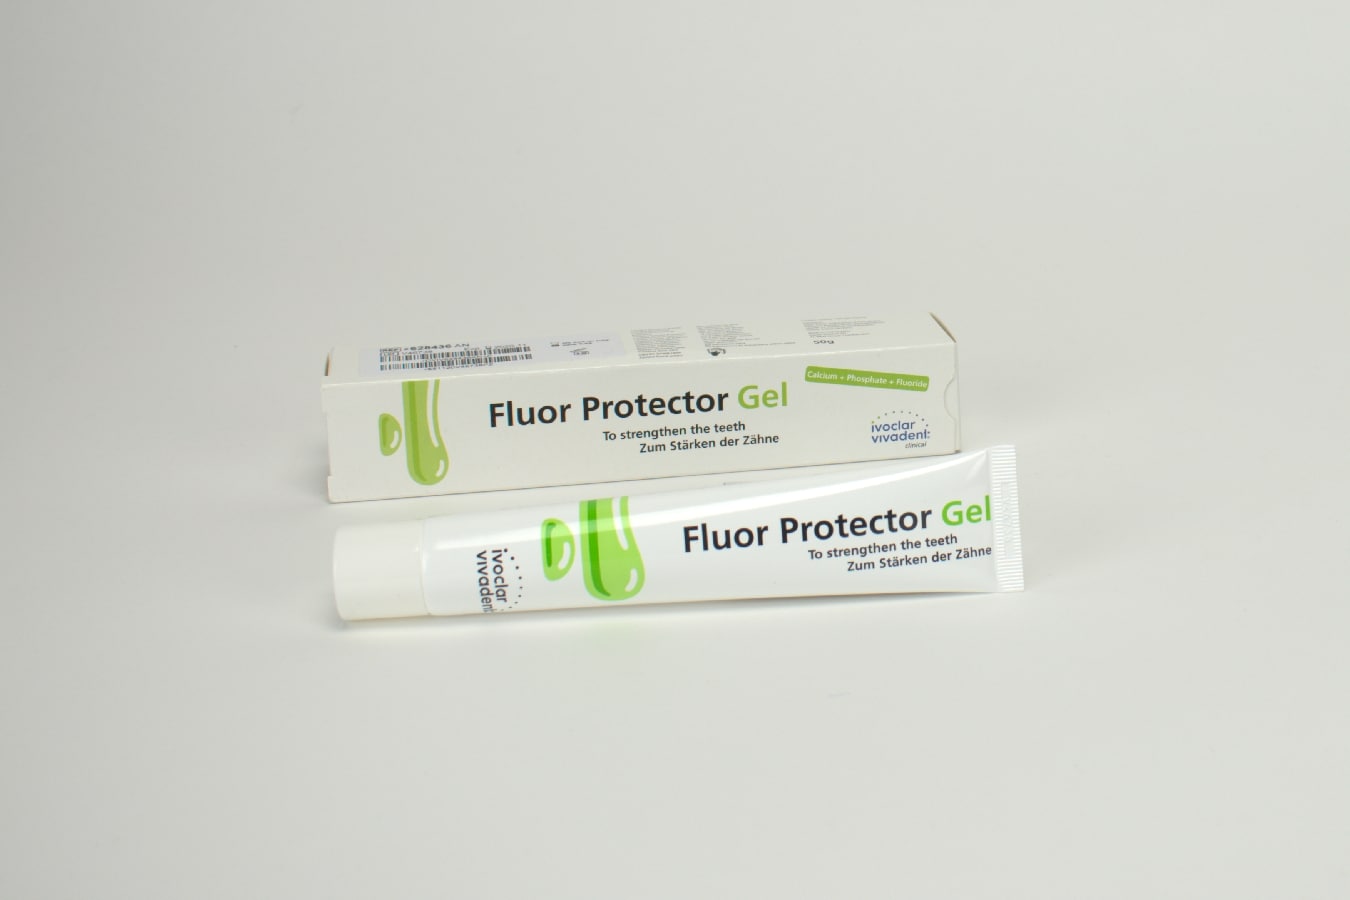 Fluor Protector Gel 1x50g tub